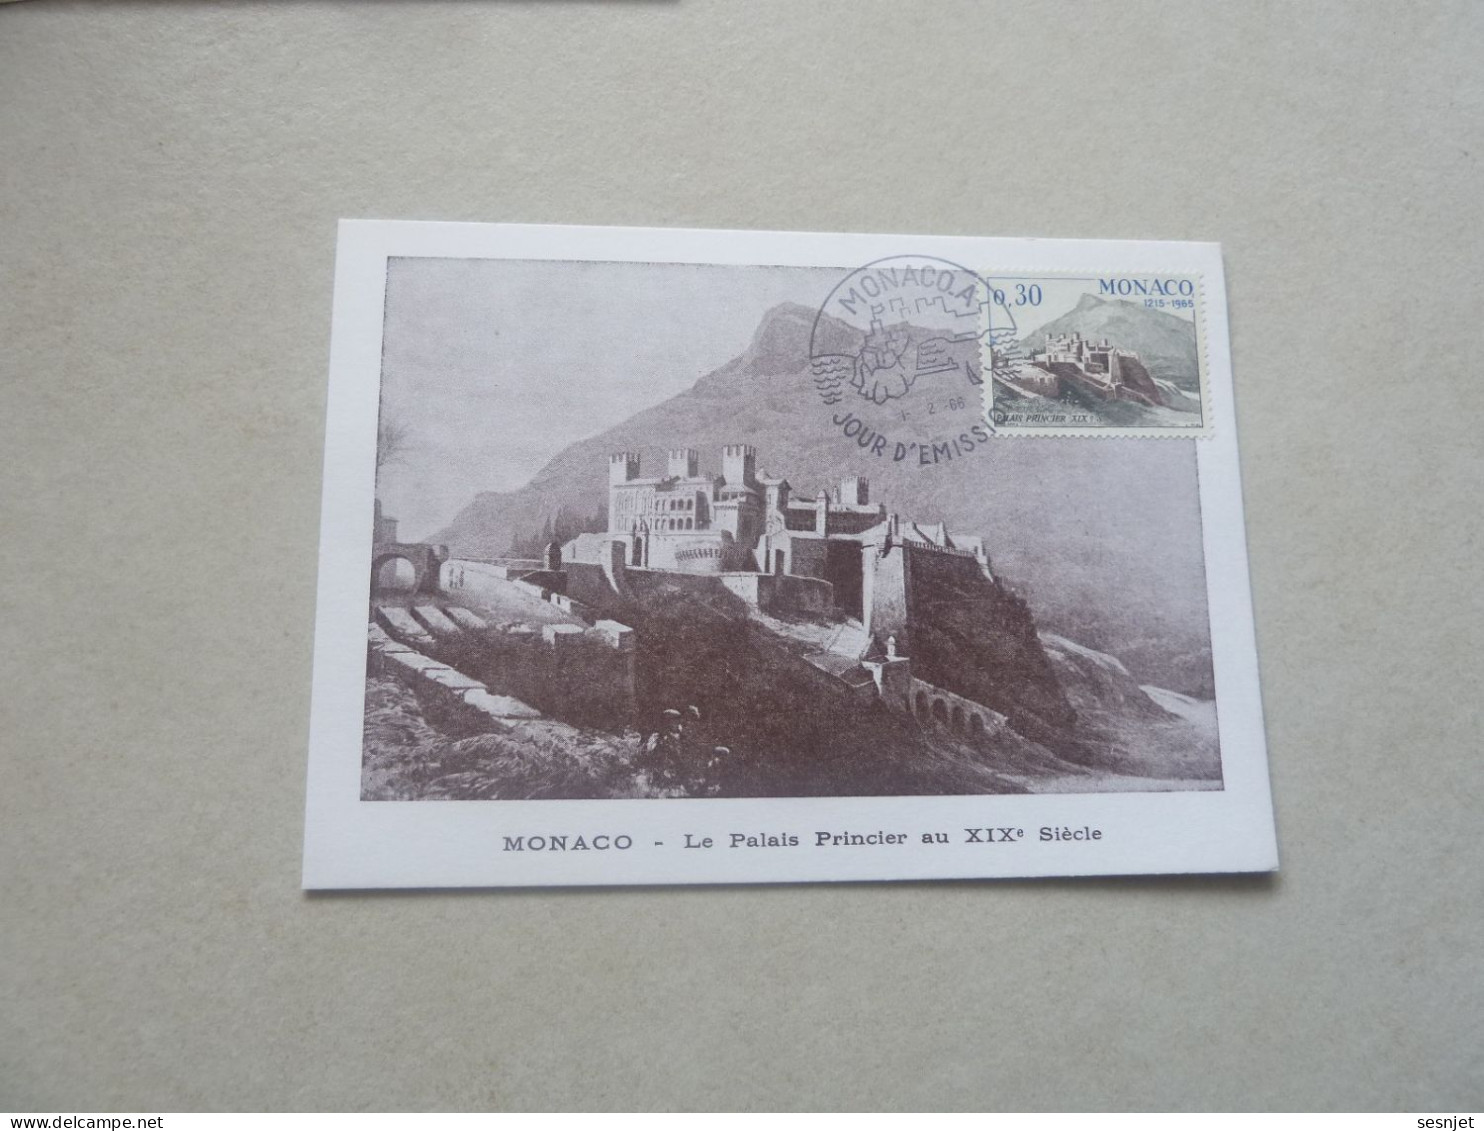 Monaco - Le Palais Au 19ème Siècle - 30c. - Yt 680 - Carte Premier Jour D'Emission - Année 1966 - - Cartoline Maximum